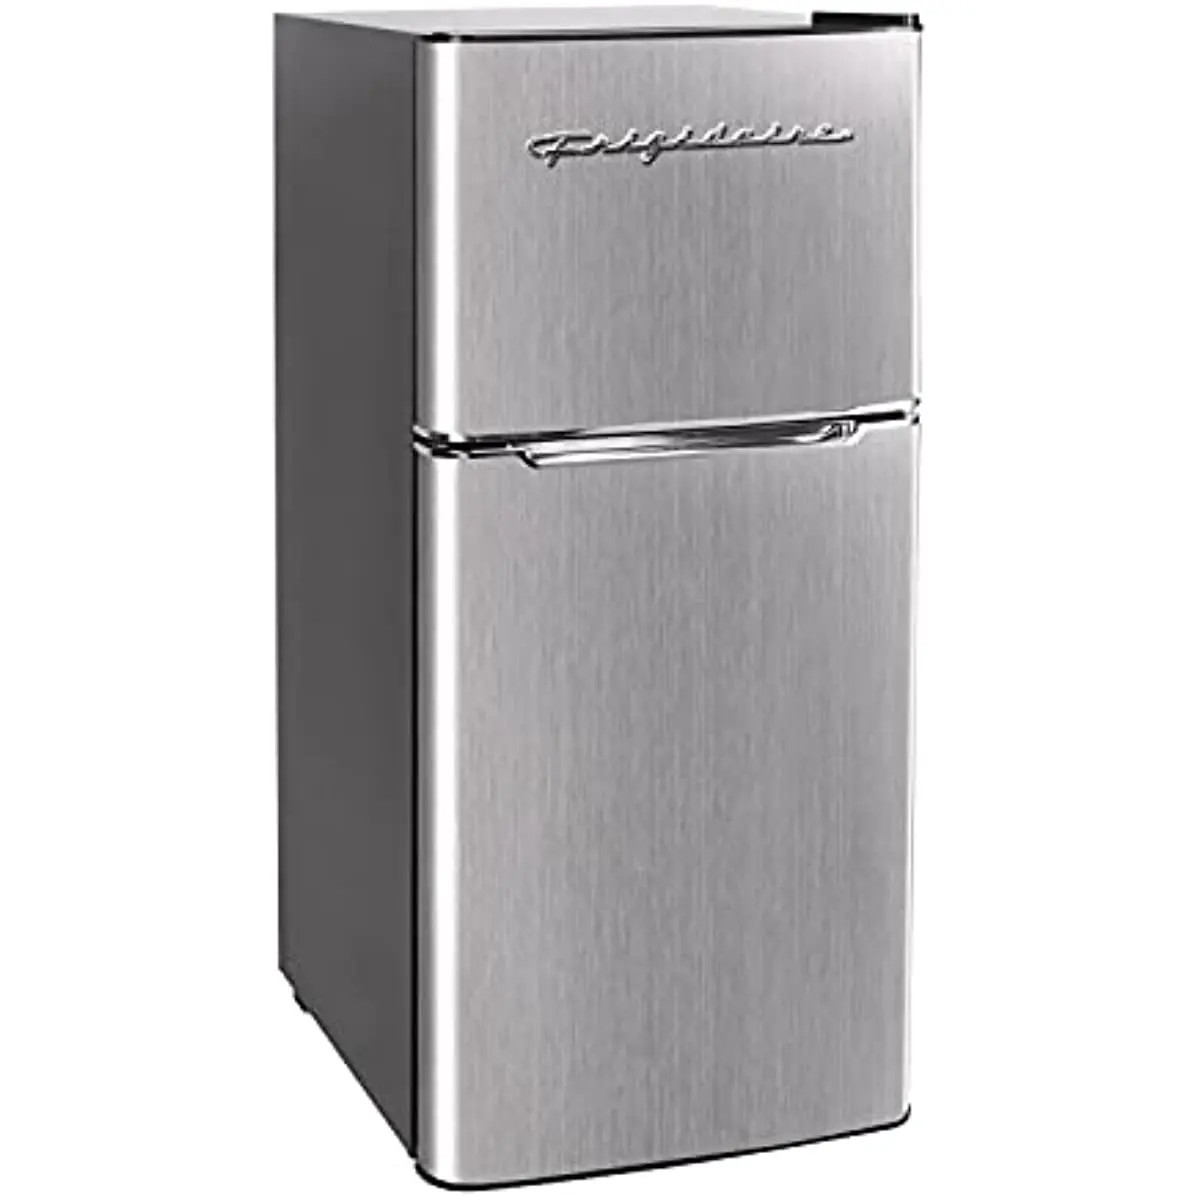 

Frigidaire EFR451 2 Door Refrigerator/Freezer, 4.6 cu ft, Platinum Series, Stainless Steel, Double